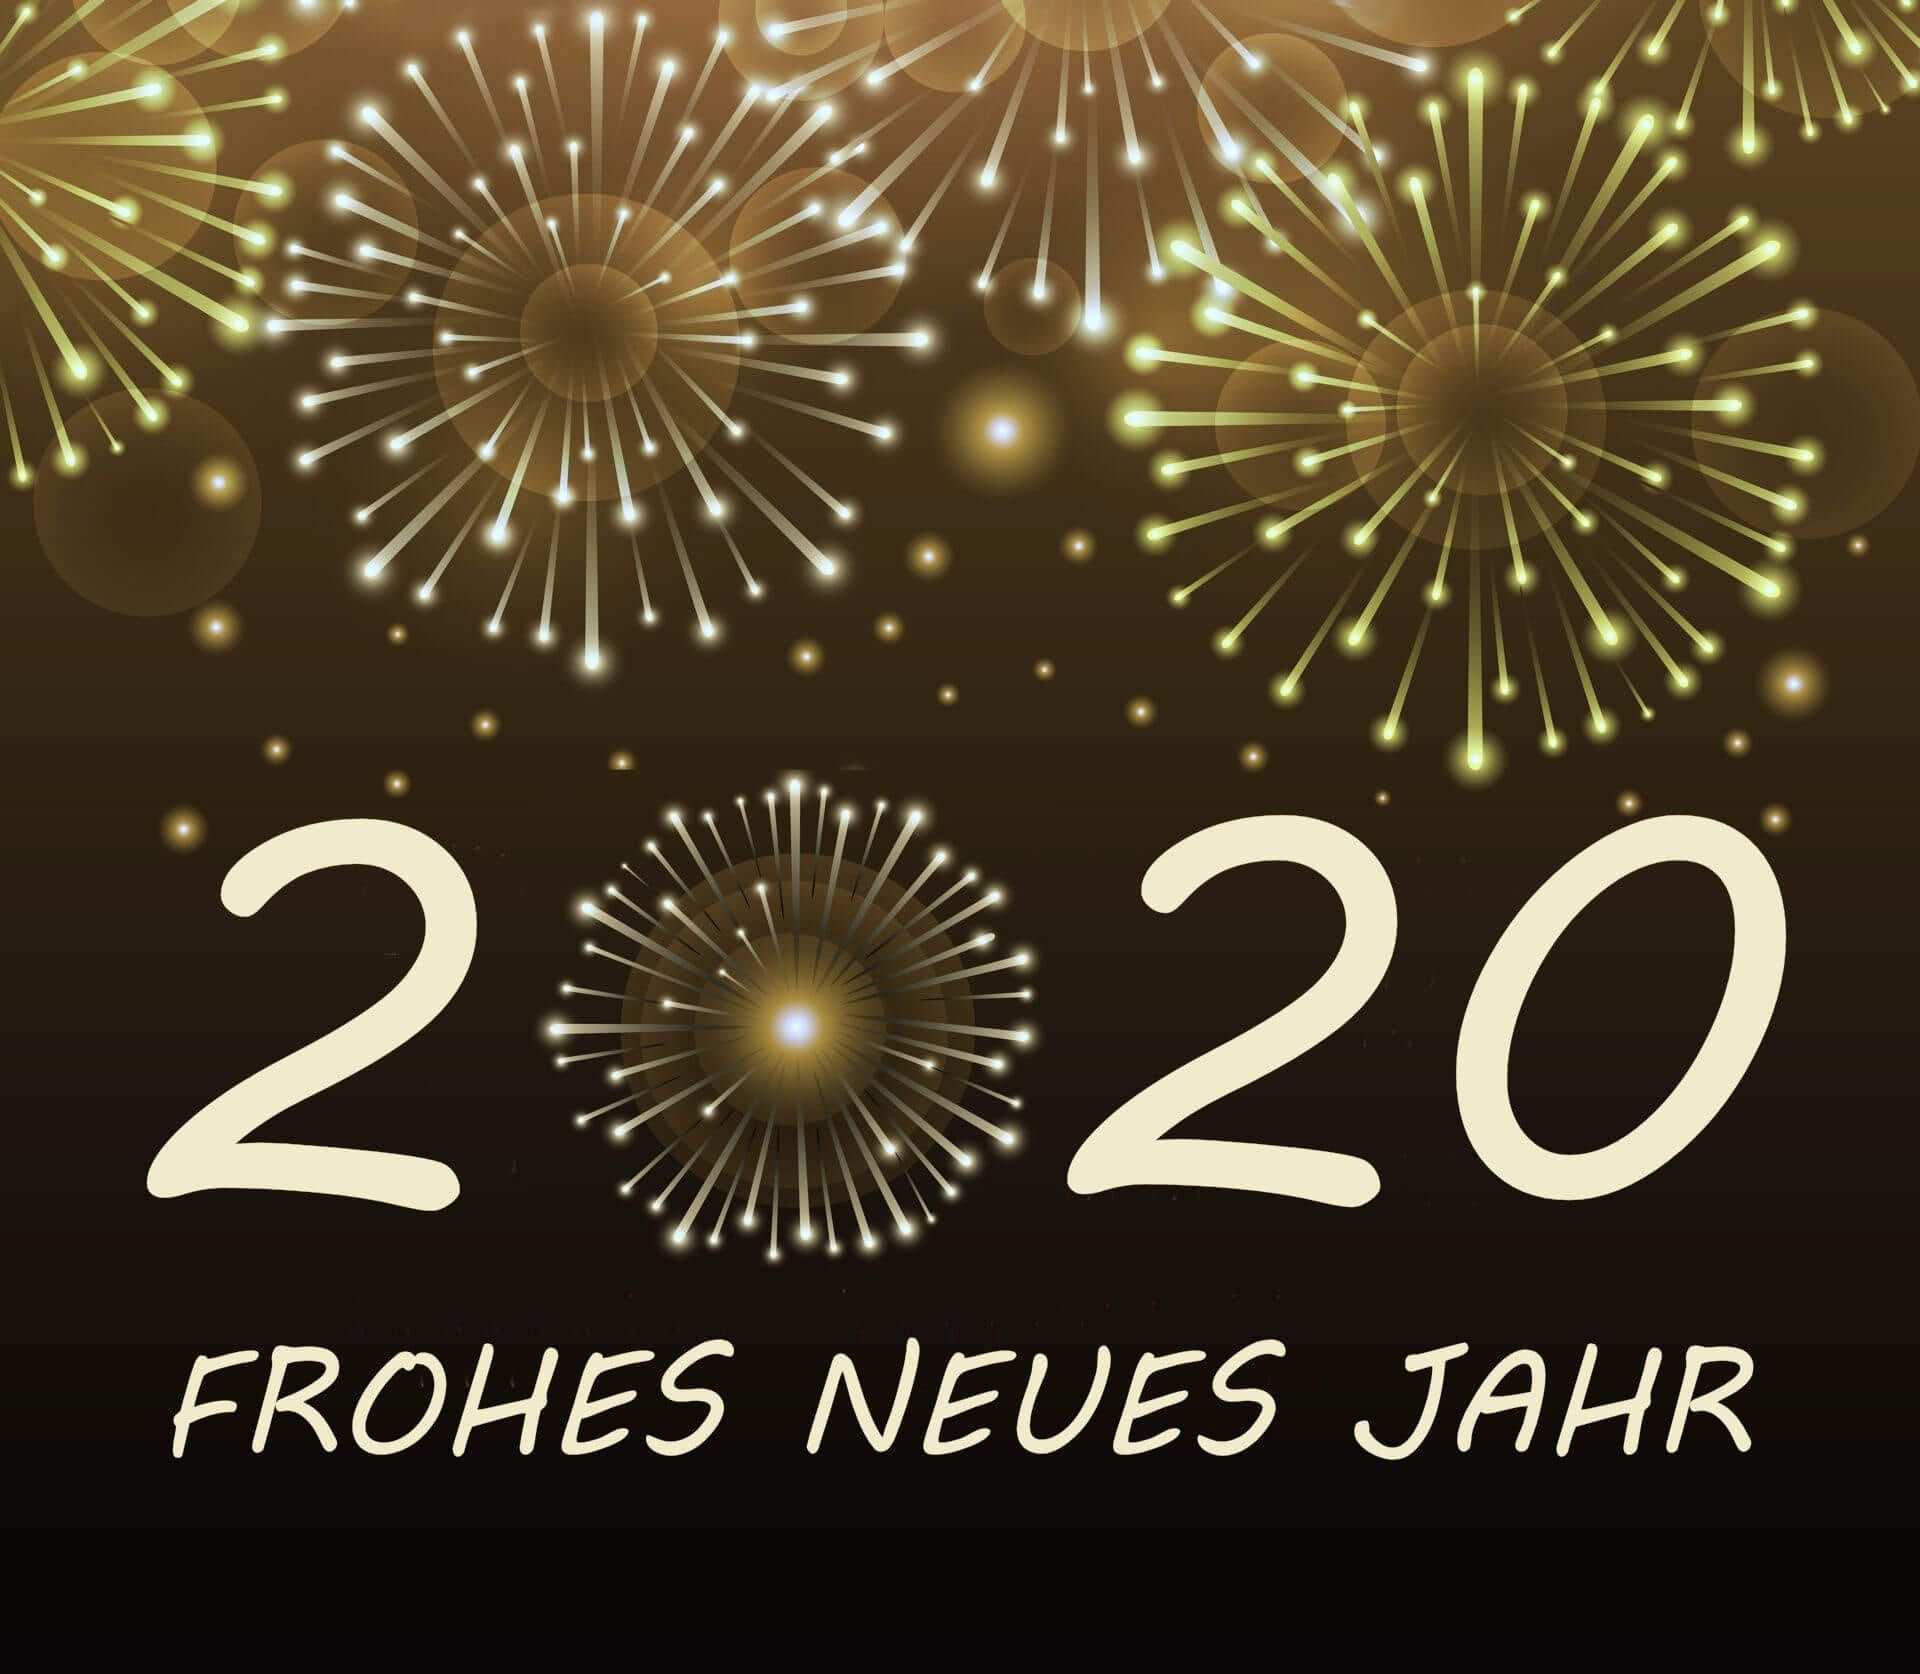 Neujahrswunsche 2020 In Englischer Sprache Neujahrswunsche 2020 In Englischer Sprache 30 Wege Zum Neujahrswunsche Frohes Neues Jahr Silvester Wunsche